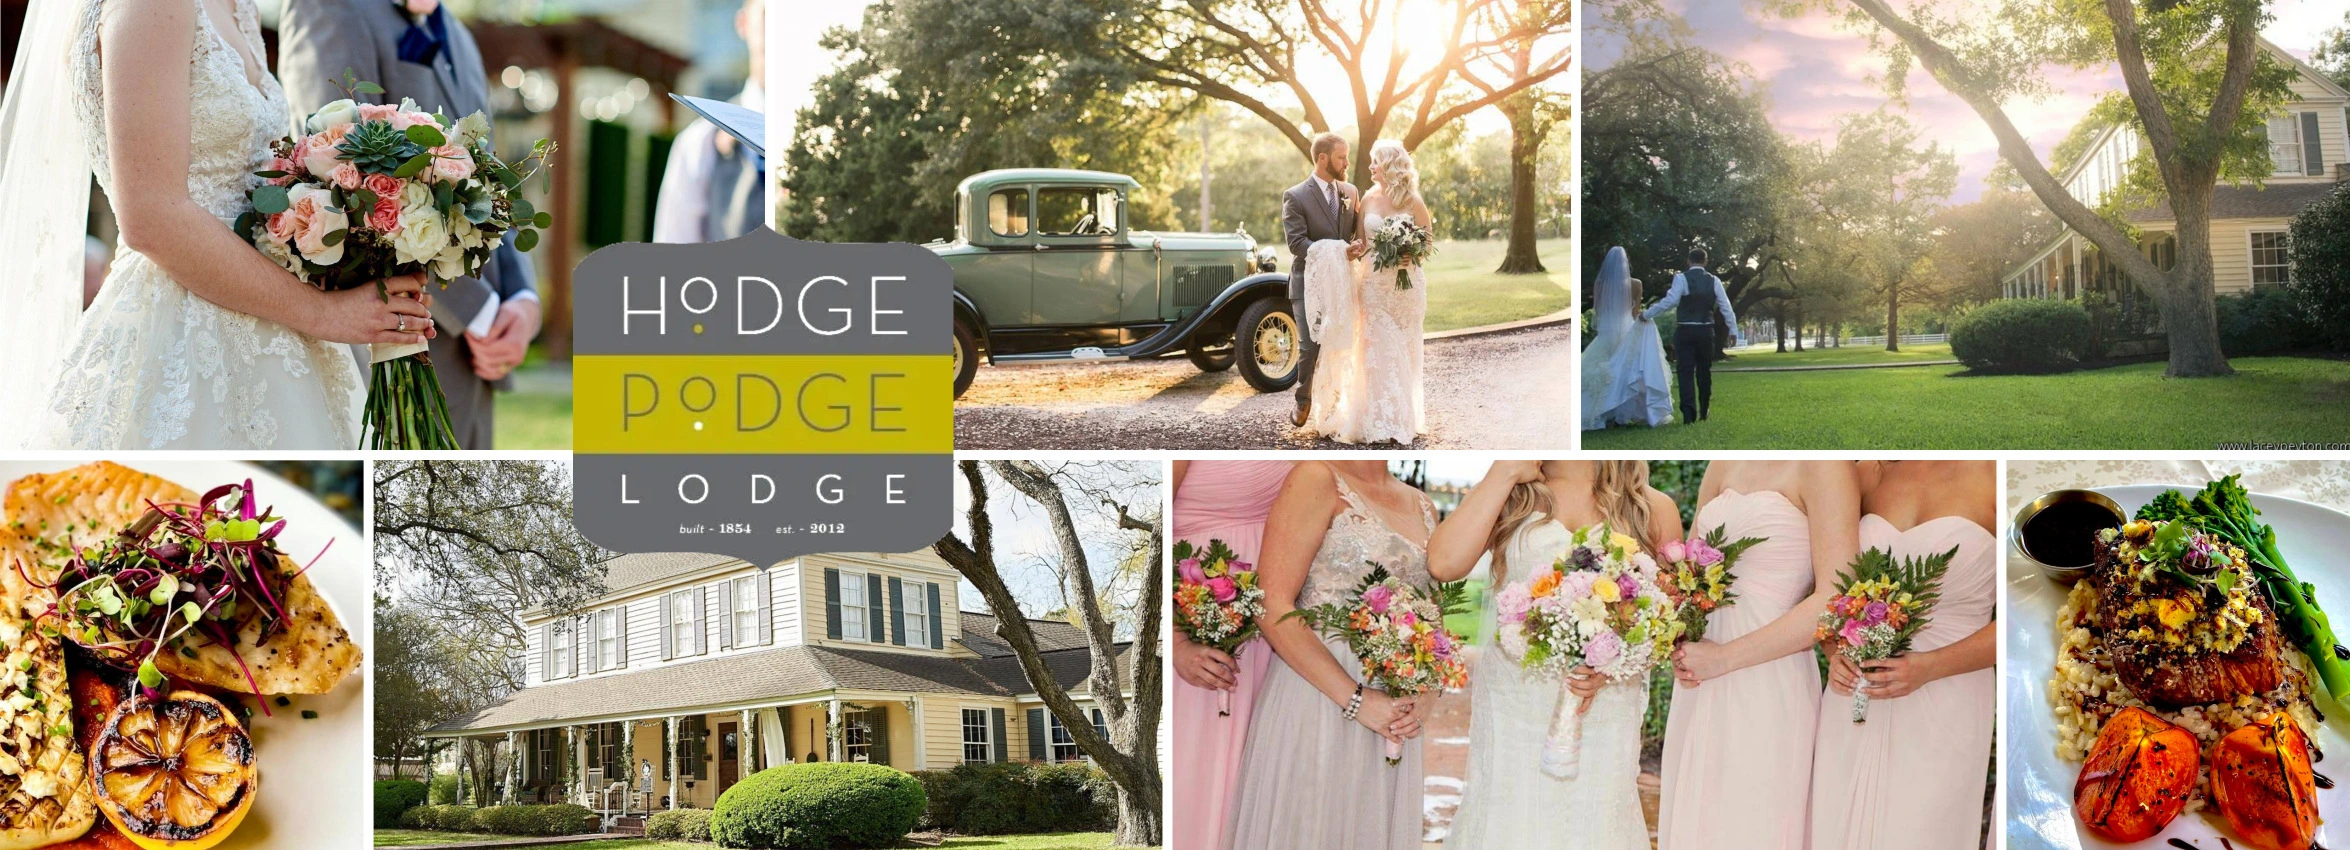 Hodge-Podge-Lodge_Desktop_ET